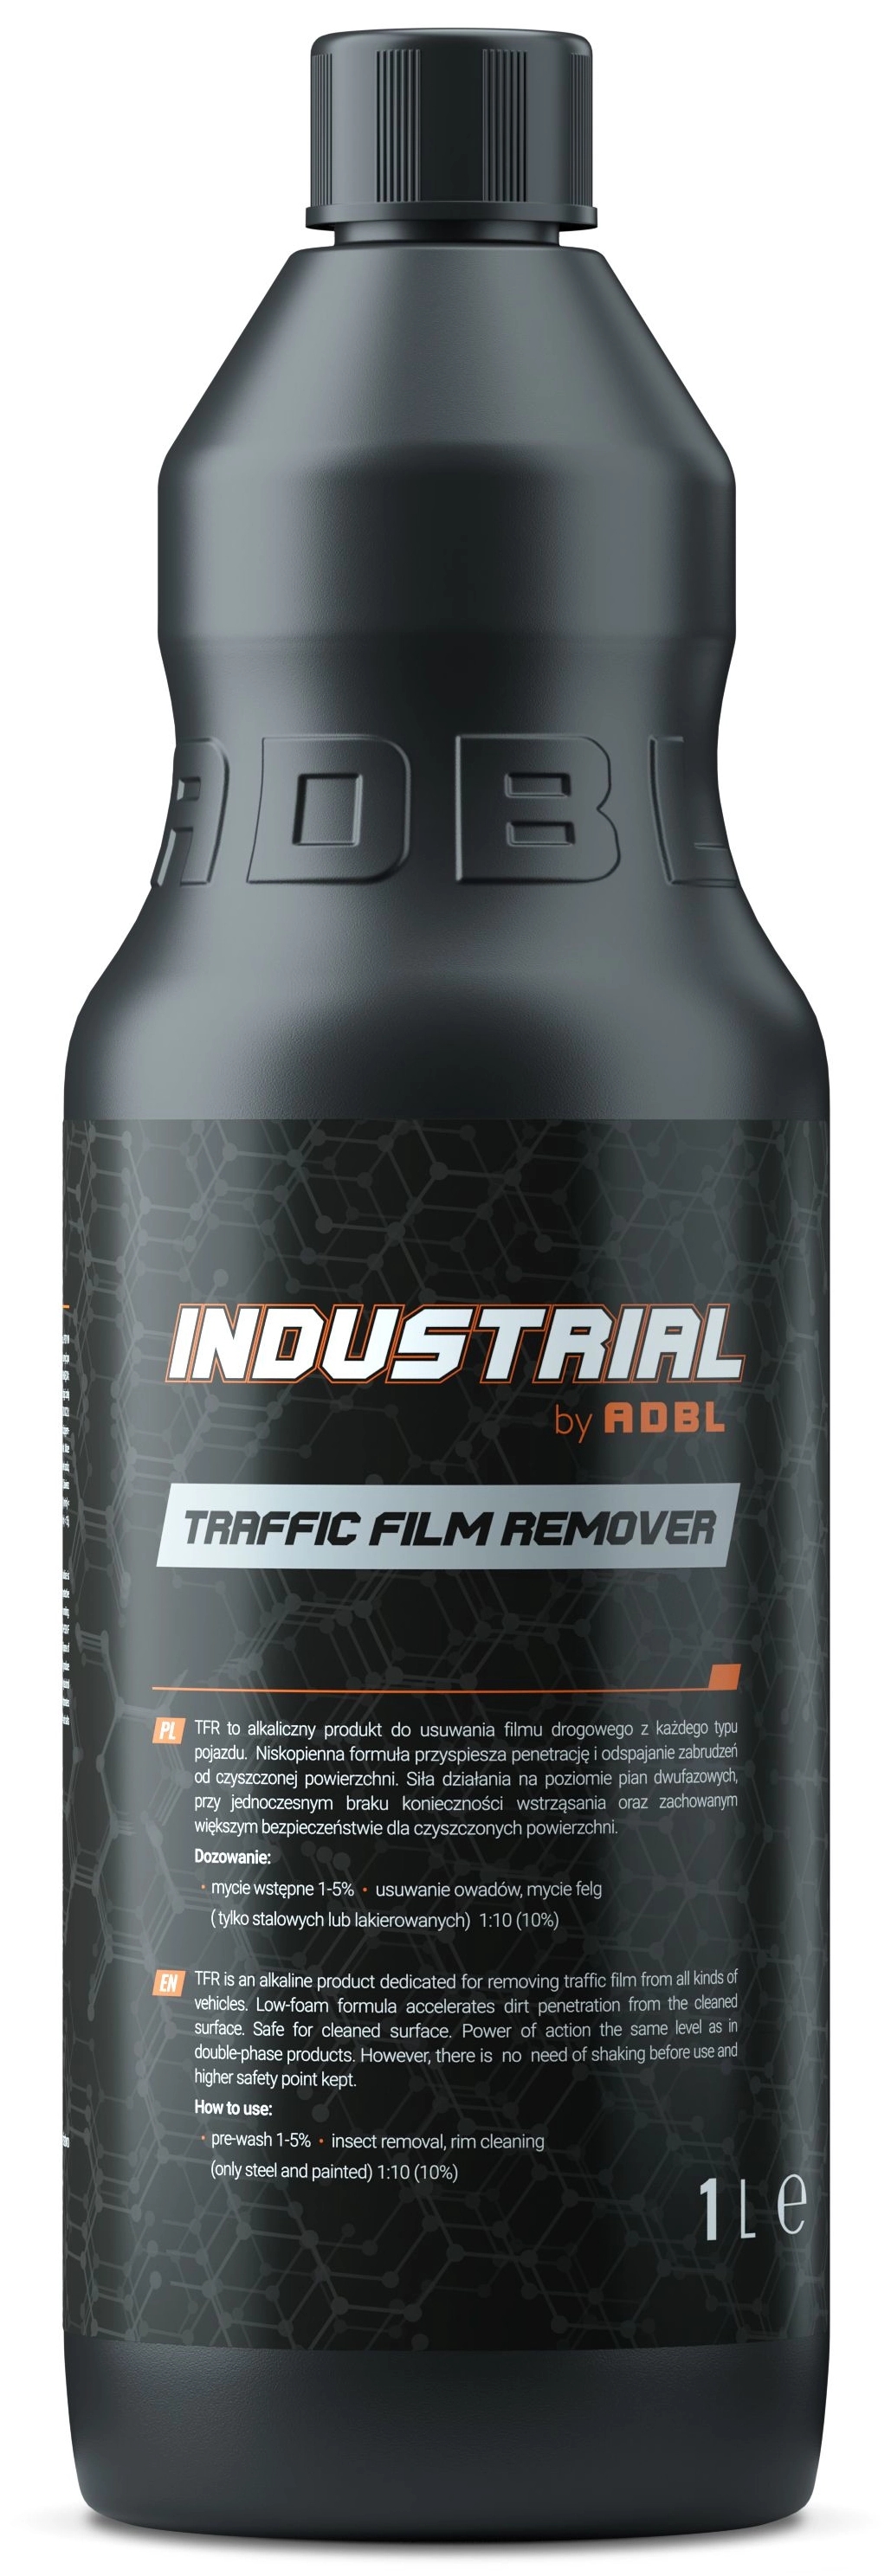 Image of Industrial by ADBL Traffic Film Remover TFR – produkt do usuwania filmu drogowego, przeznaczony dla myjni 1L